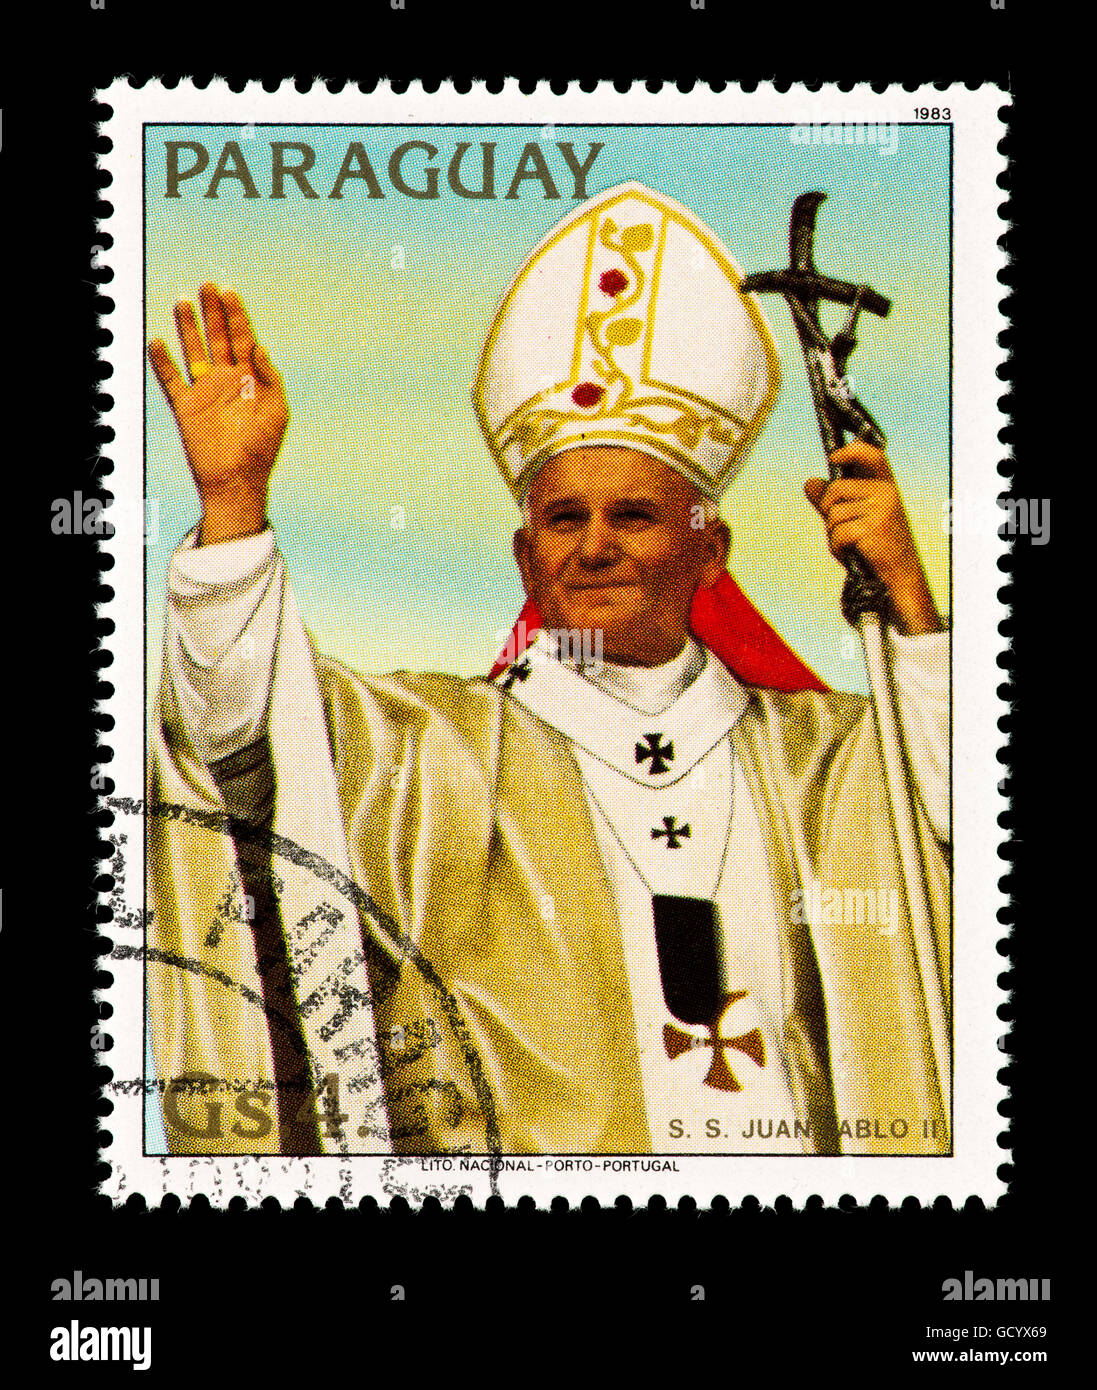 Timbre du Paraguay représentant le Pape Jean Paul II de donner une  bénédiction Photo Stock - Alamy